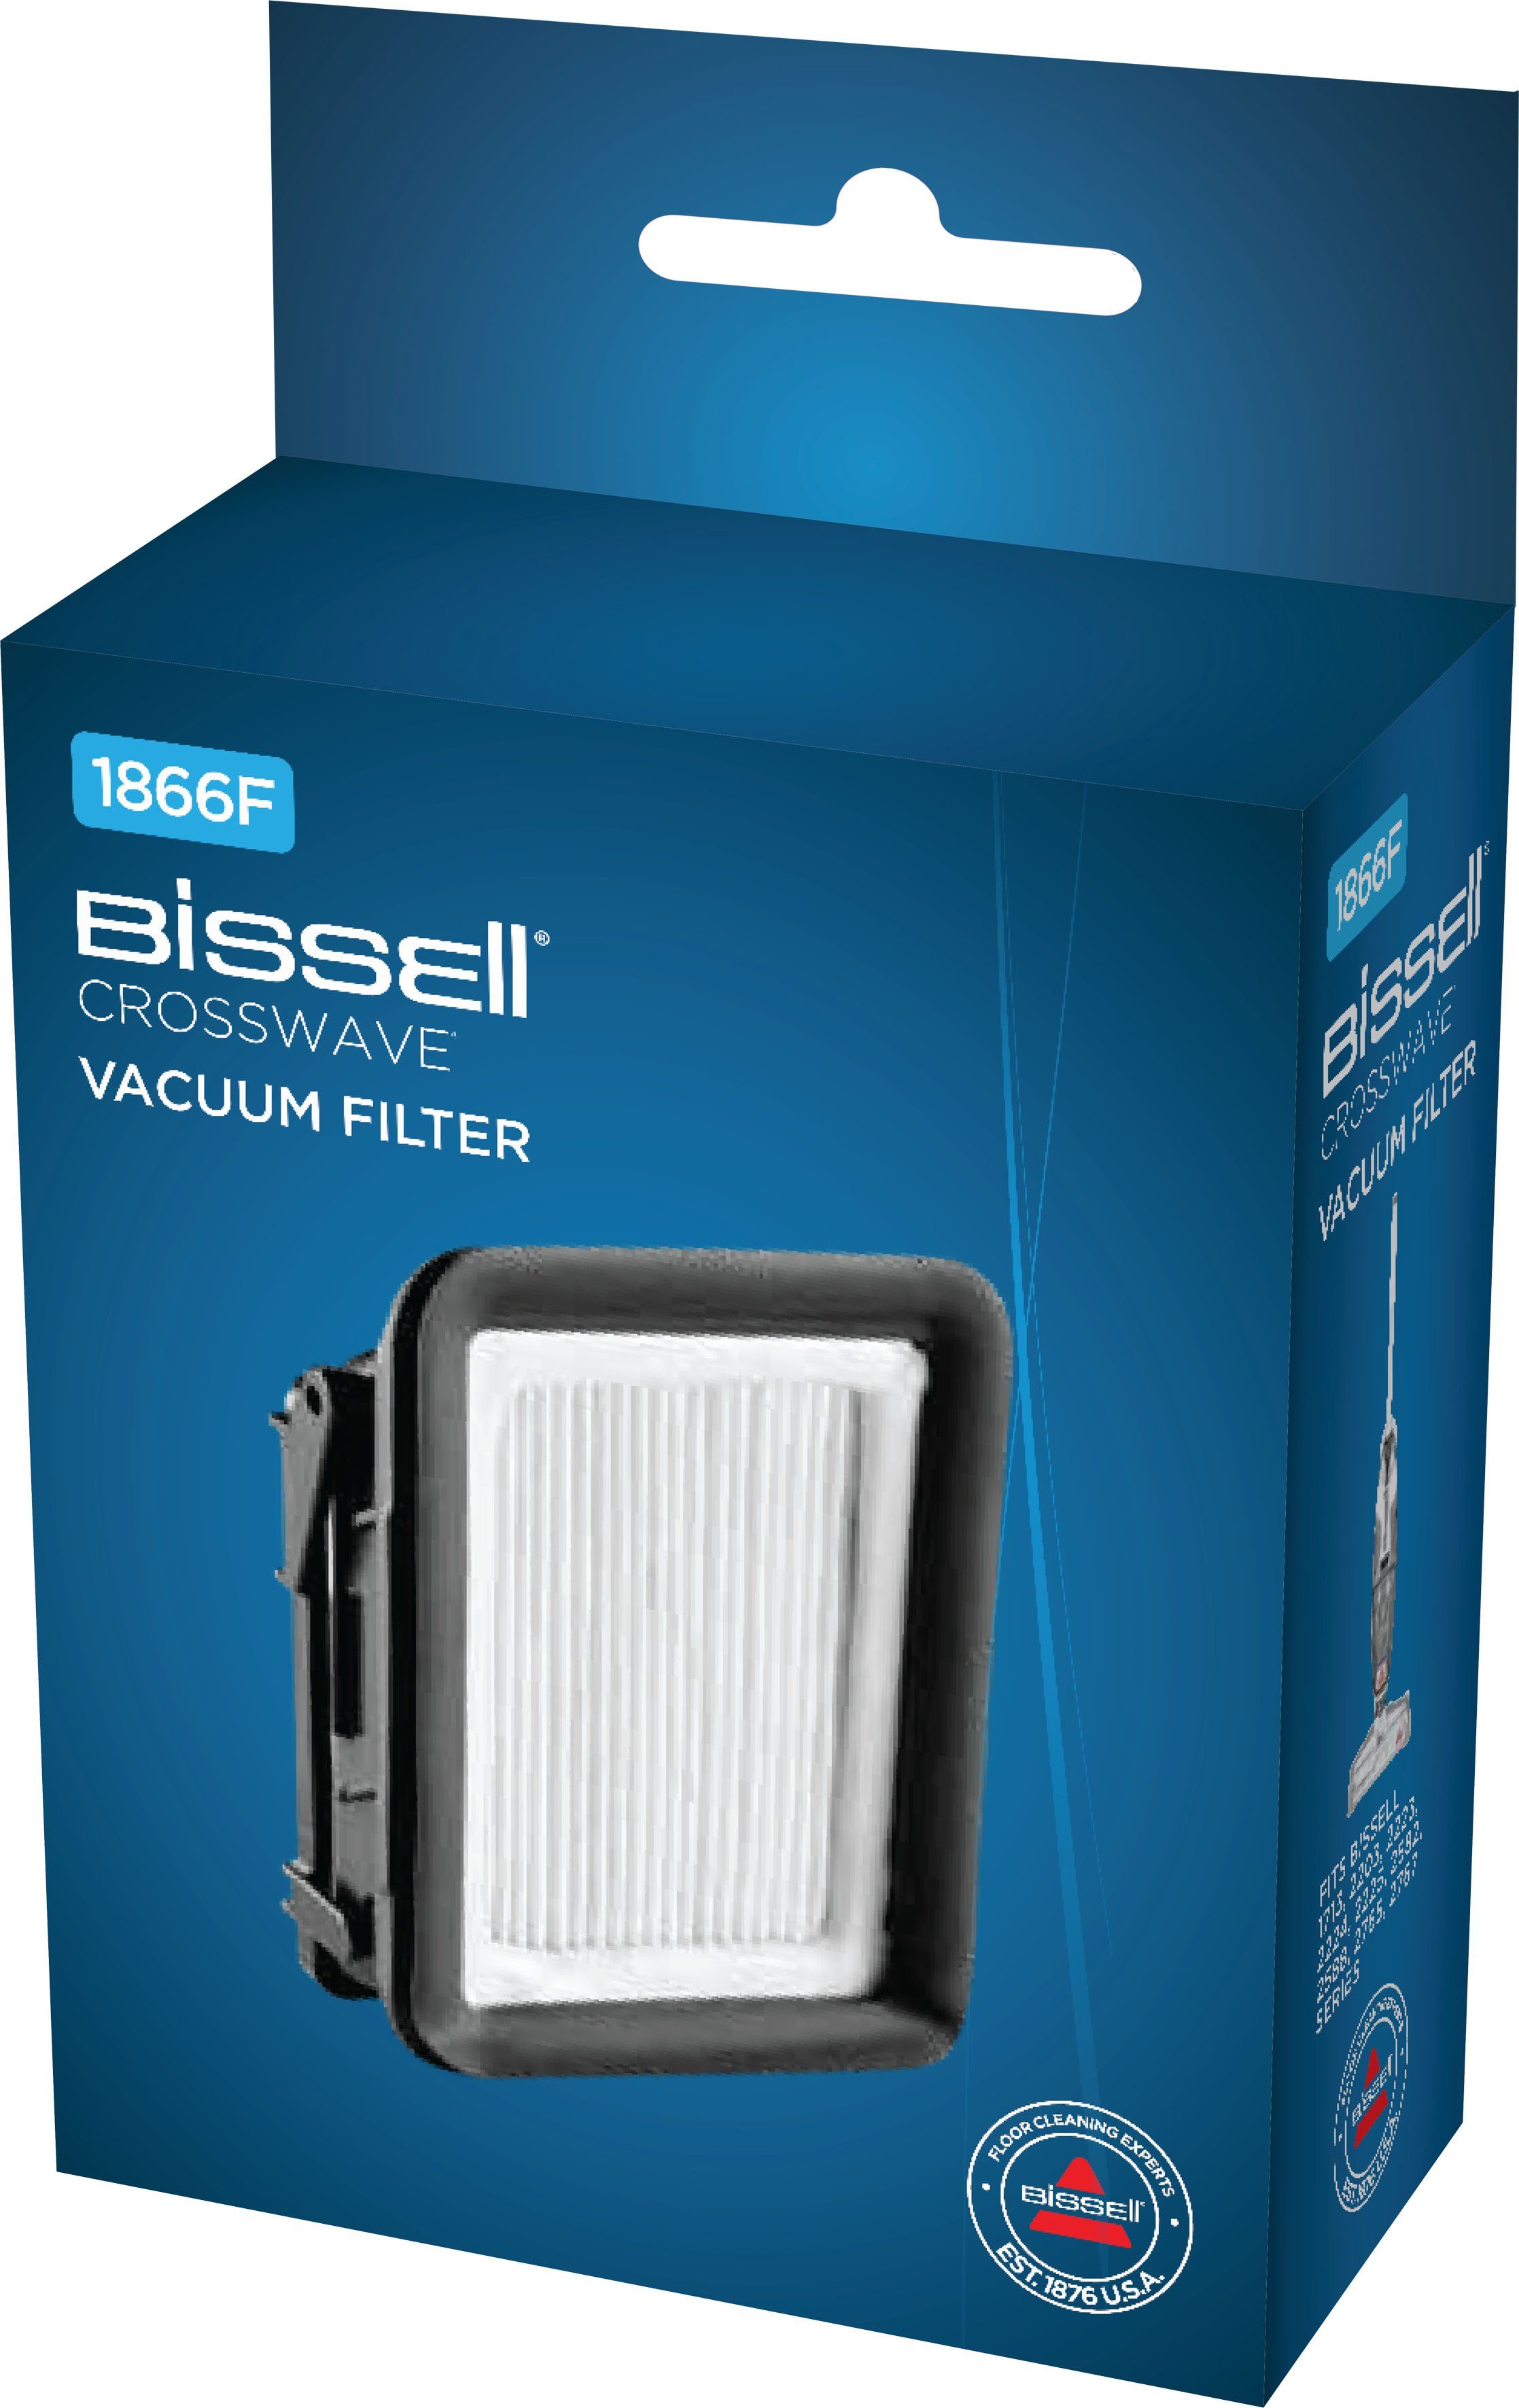 Bissell Motor Zubehör CrossWave BISSELL Wasserfilter für waschbar-1866F, Serie Filter Crosswave